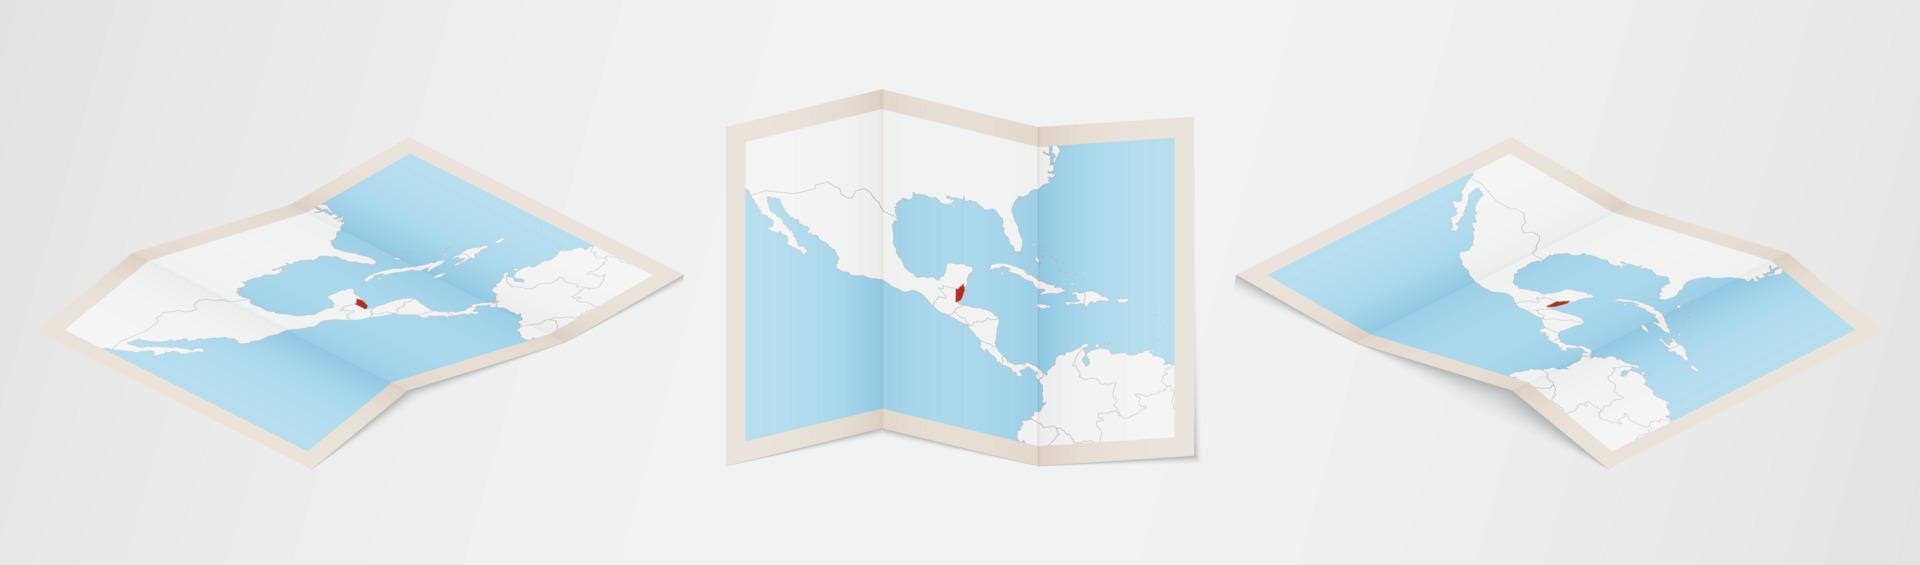 Faltkarte von Belize in drei verschiedenen Versionen. vektor